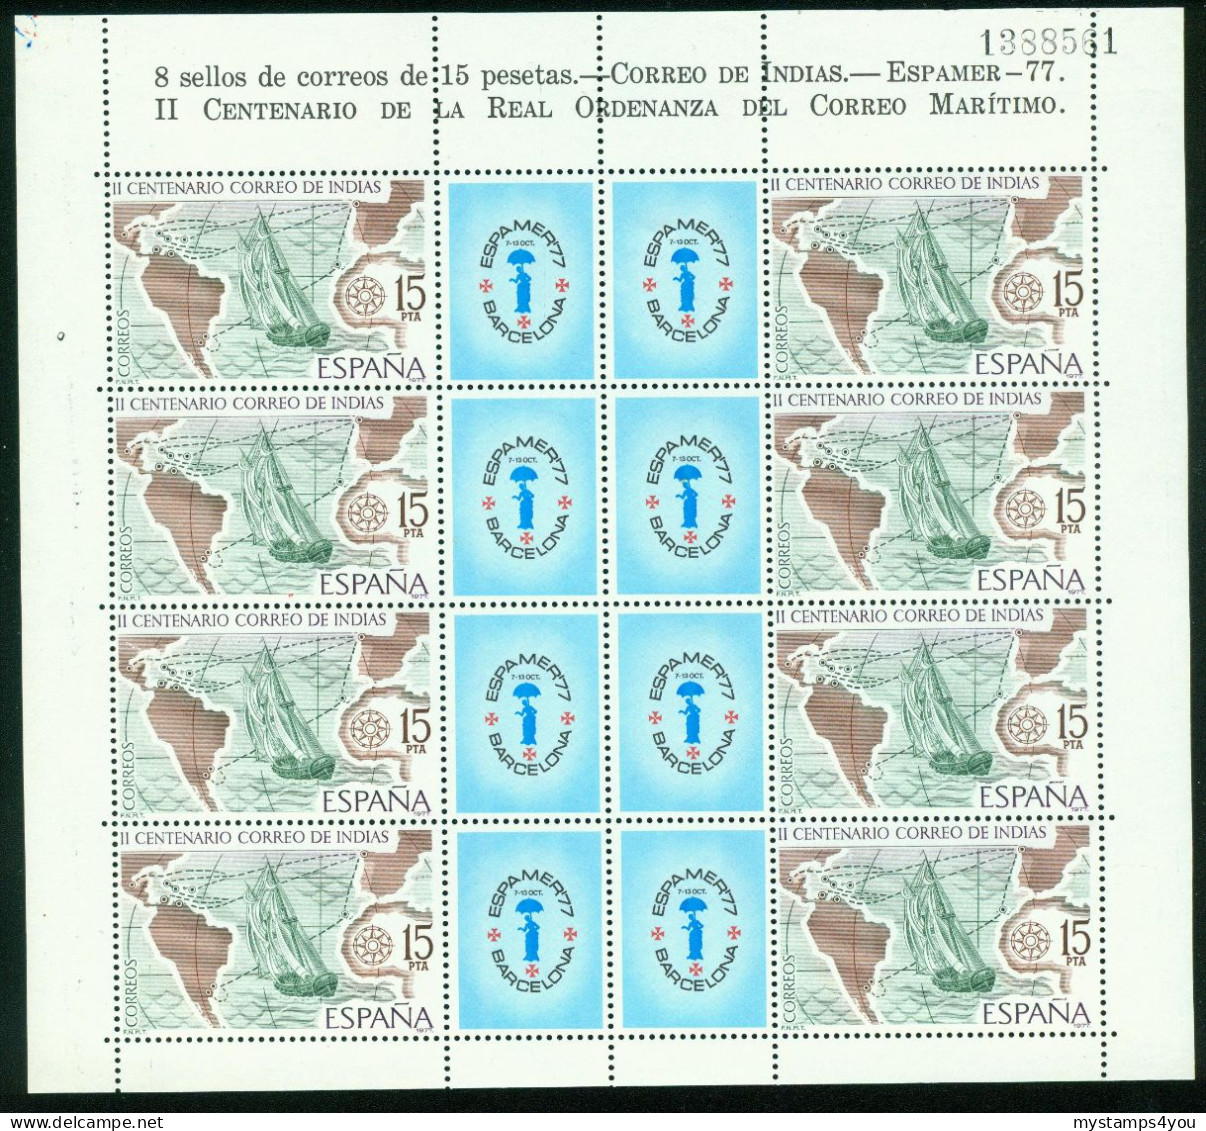 Bm Spain 1977 MiNr 2330 Kleinbogen Sheet MNH | Bicent Of Mail To The Indies. "Espamer 77" Stamp Exn Barcelona #bog-0134 - Blocks & Sheetlets & Panes